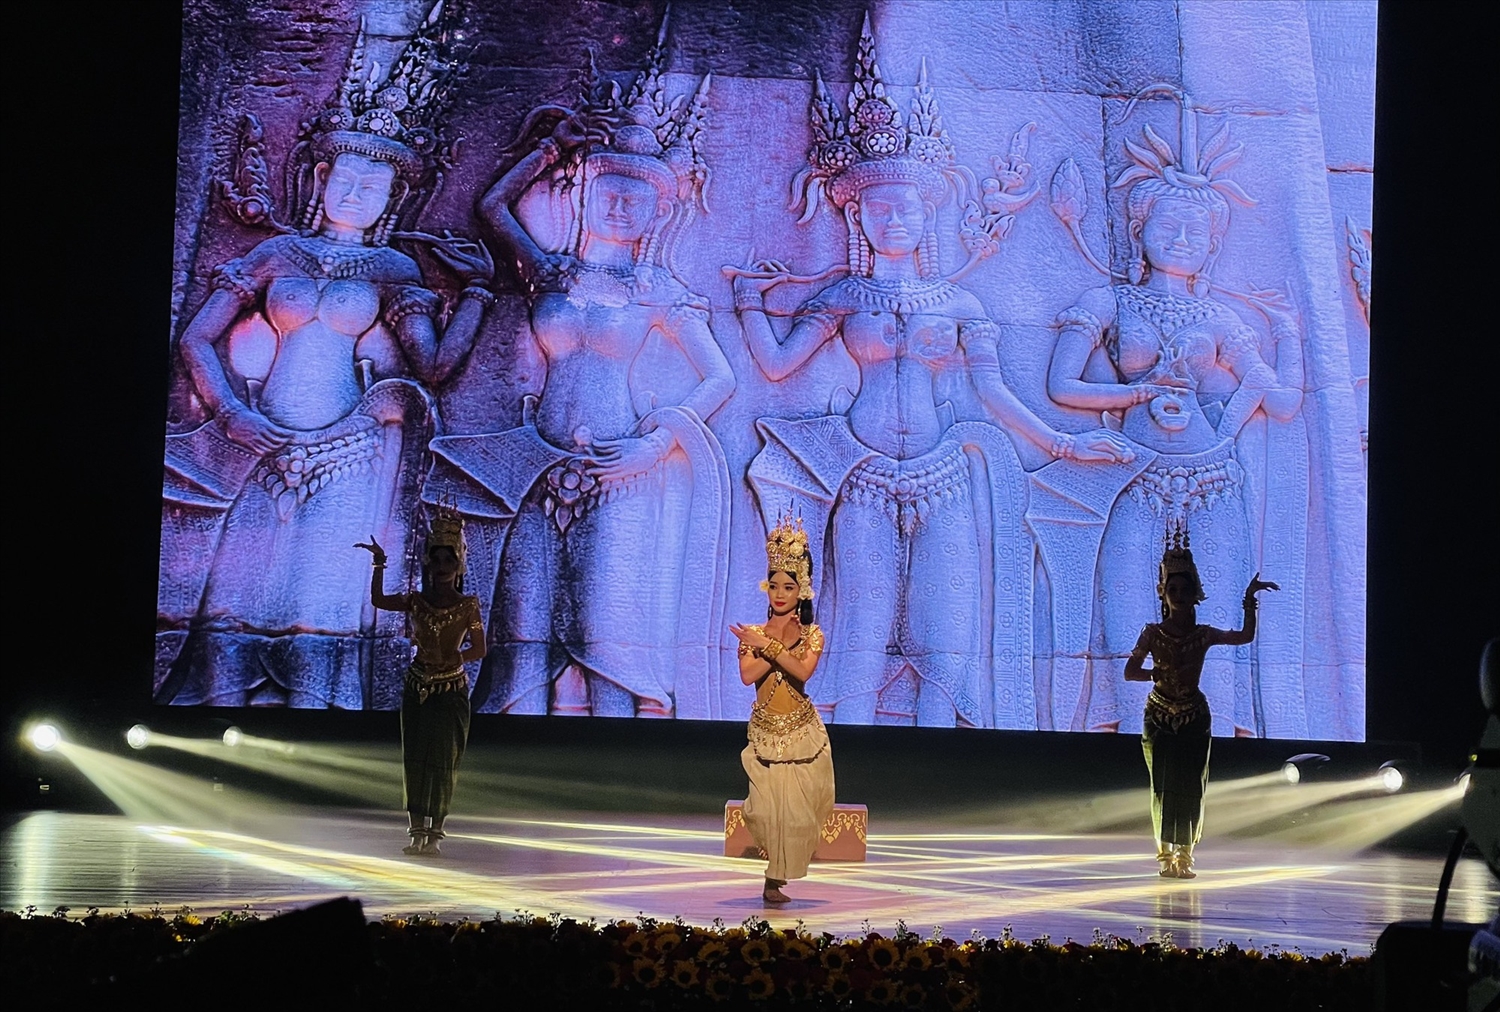 Tiết mục múa Apsara mở màn chương trình khai mạc của các nghệ sĩ Campuchia.